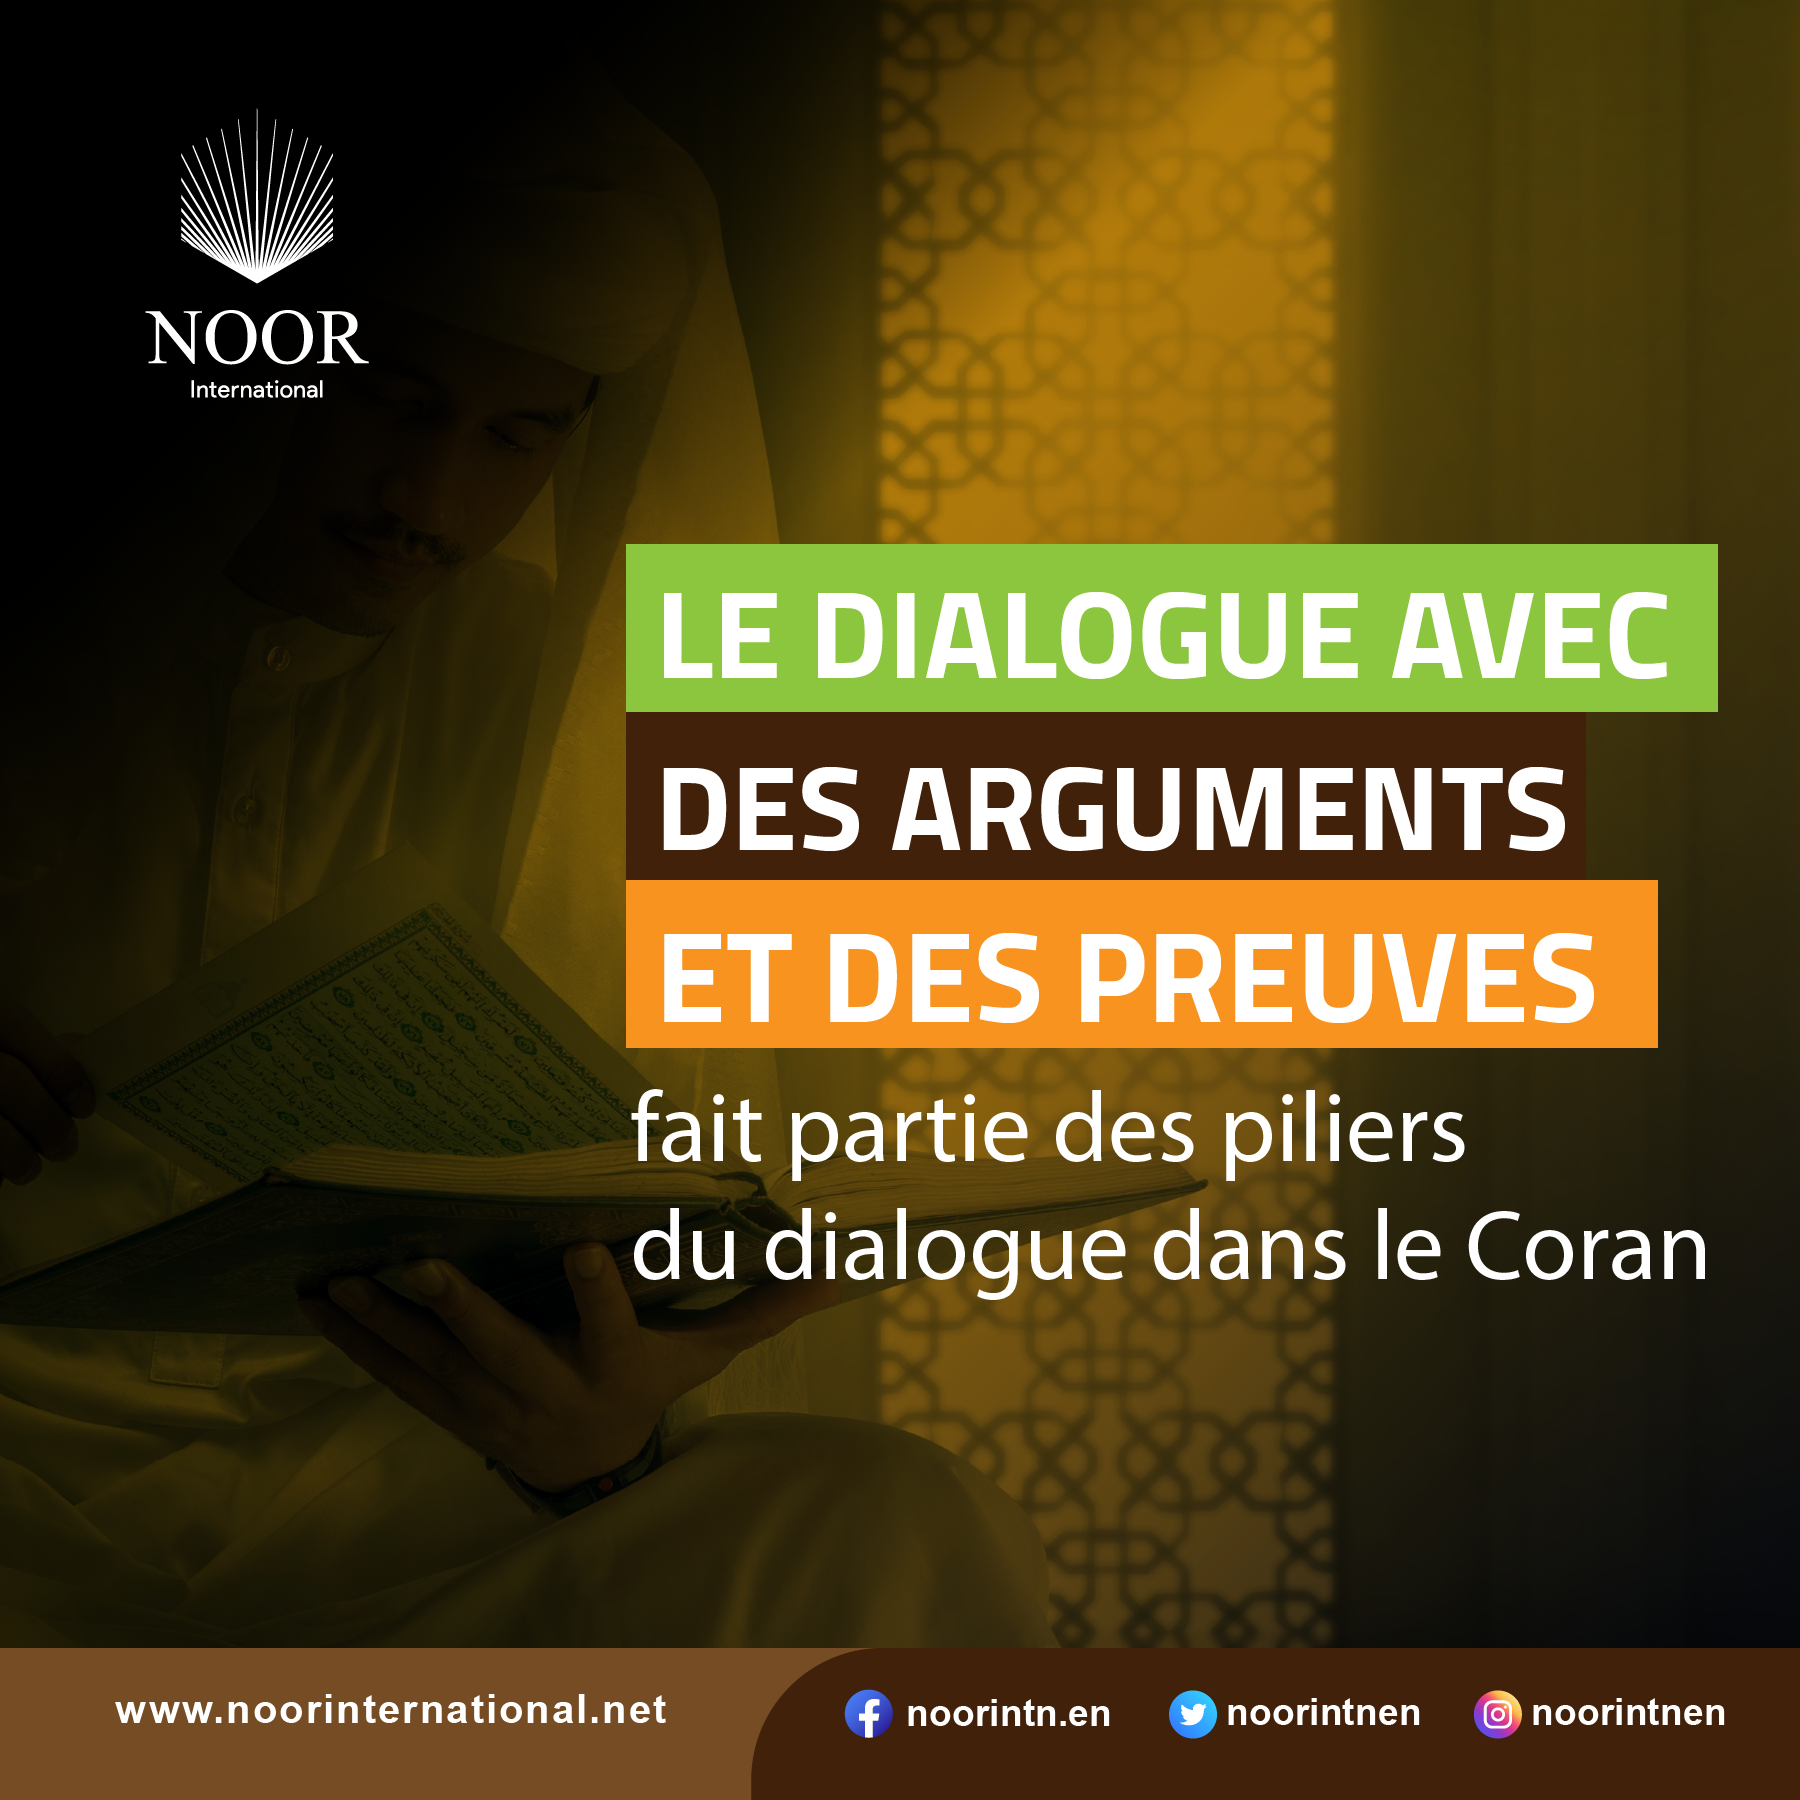 Le dialogue avec des arguments et des preuves fait partie des piliers du dialogue dans le Coran